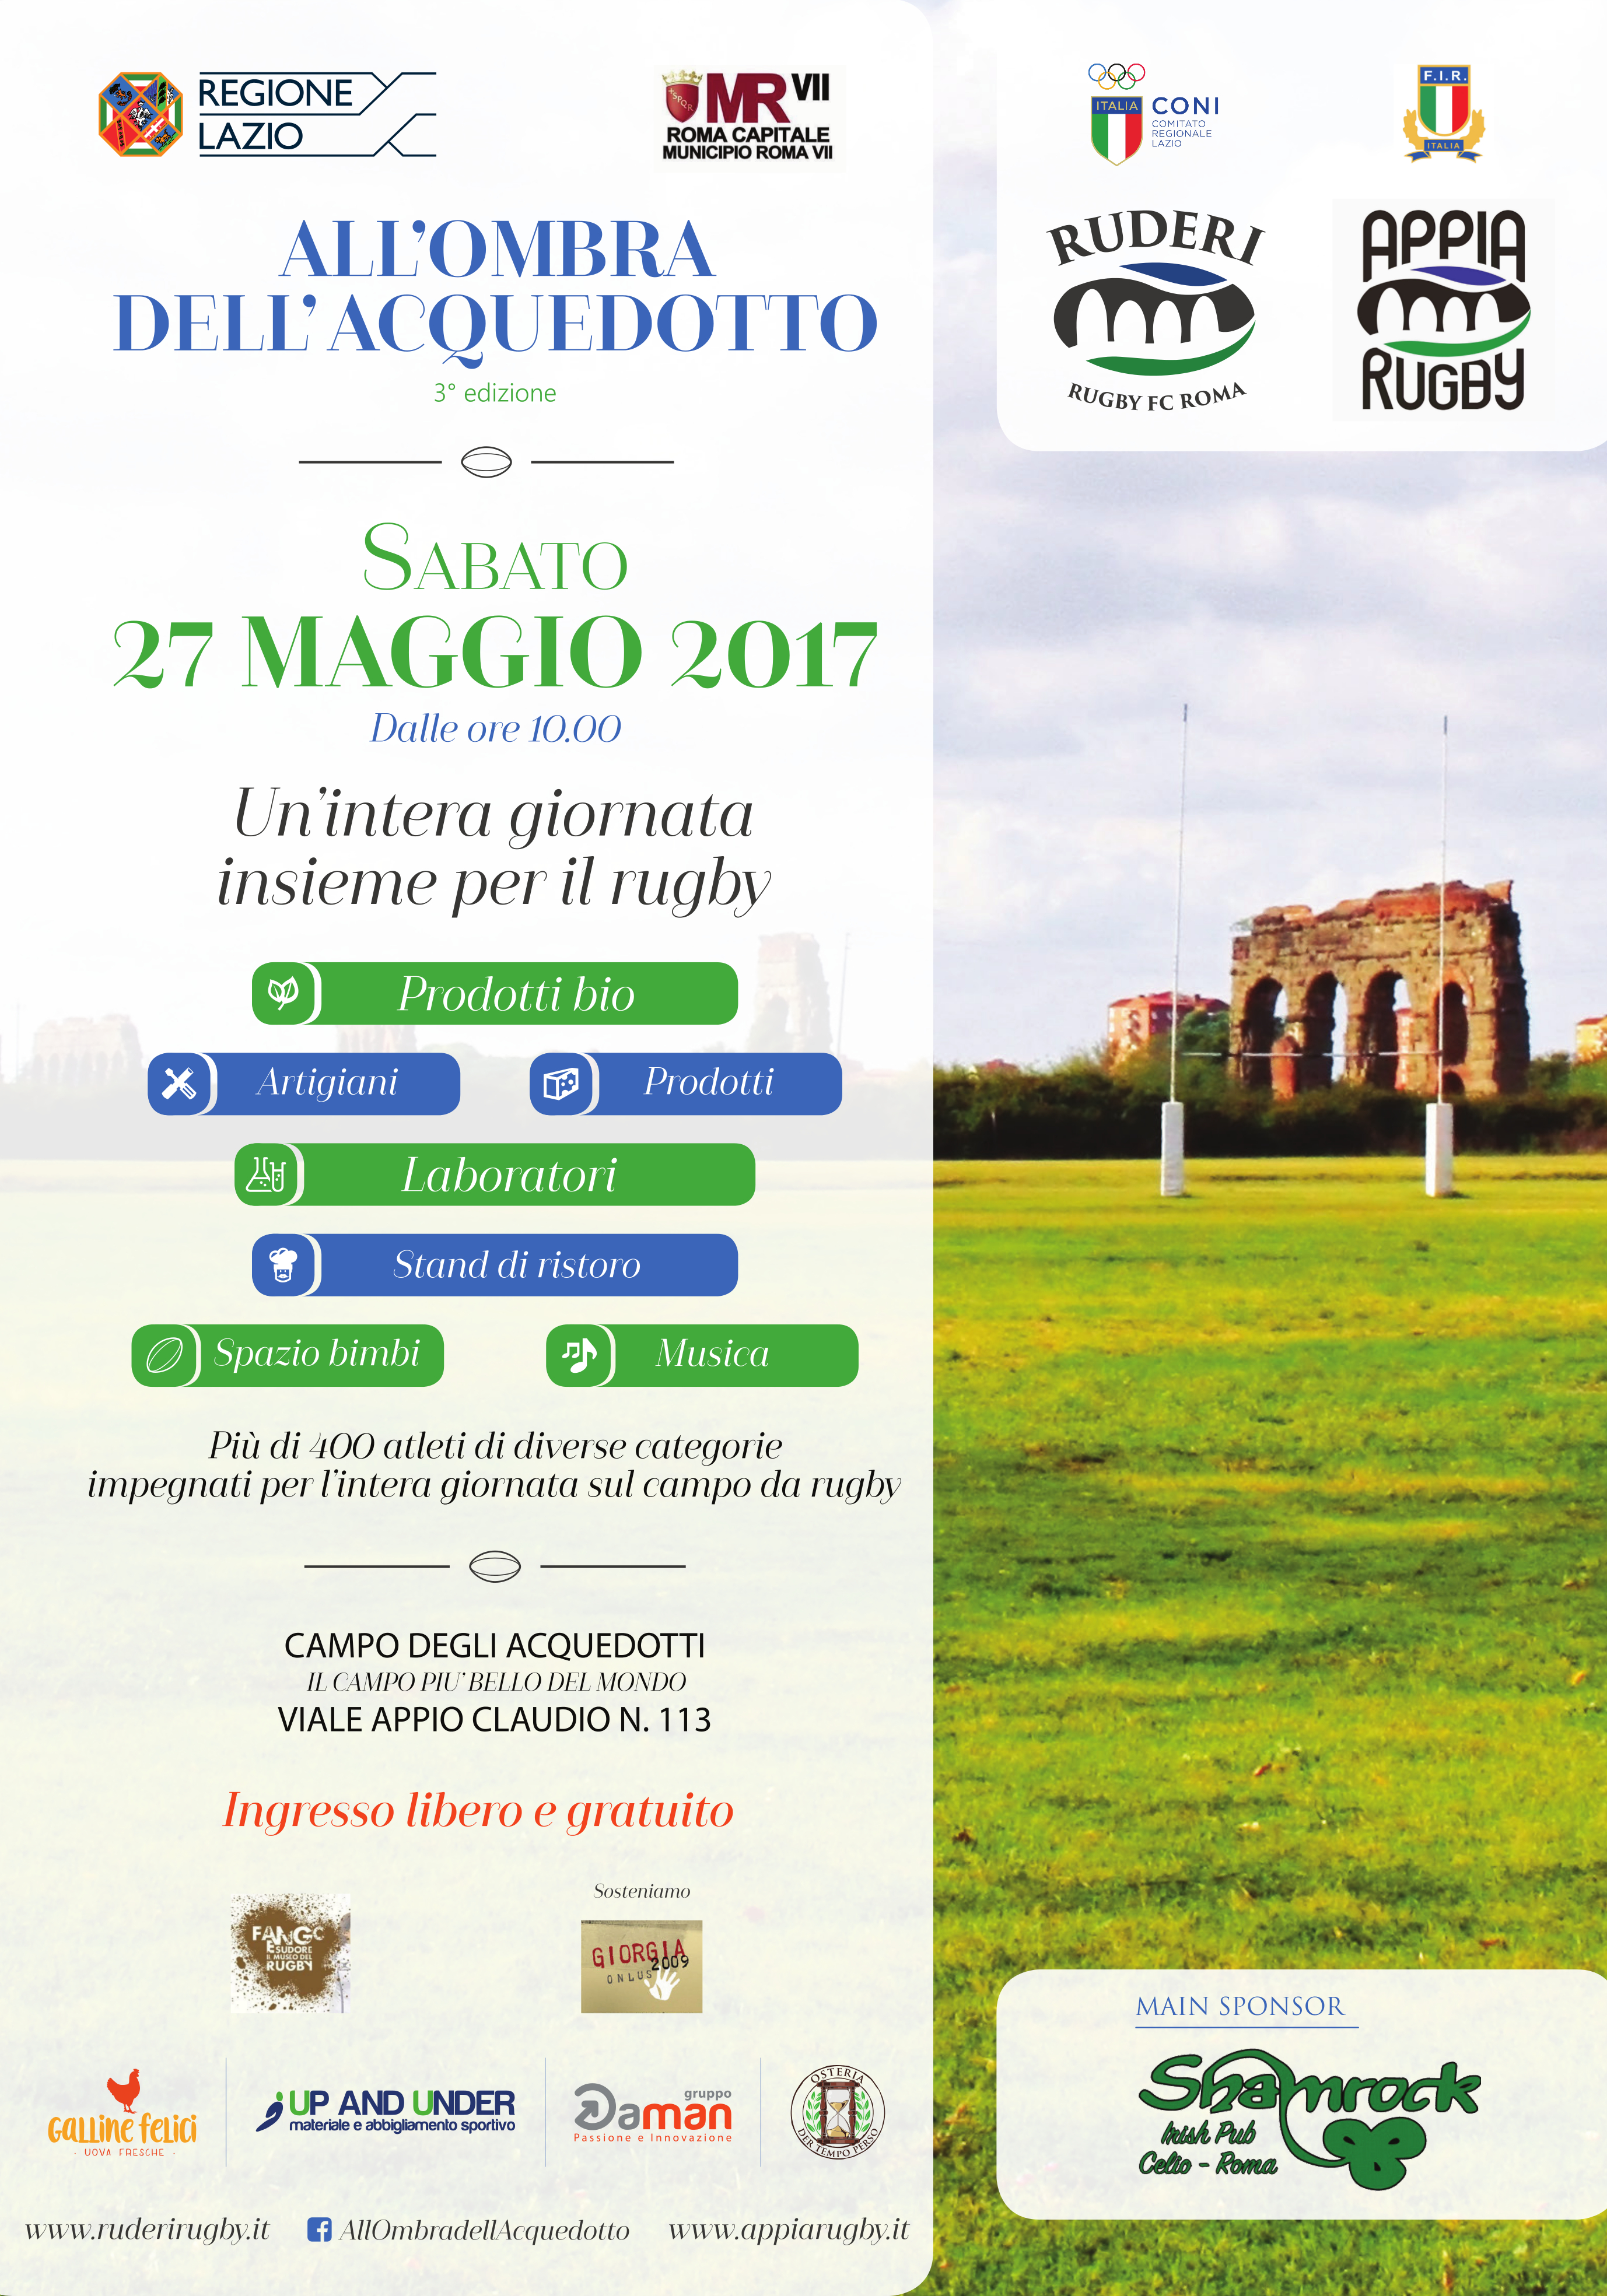 Doppio appuntamento all’Appia Rugby